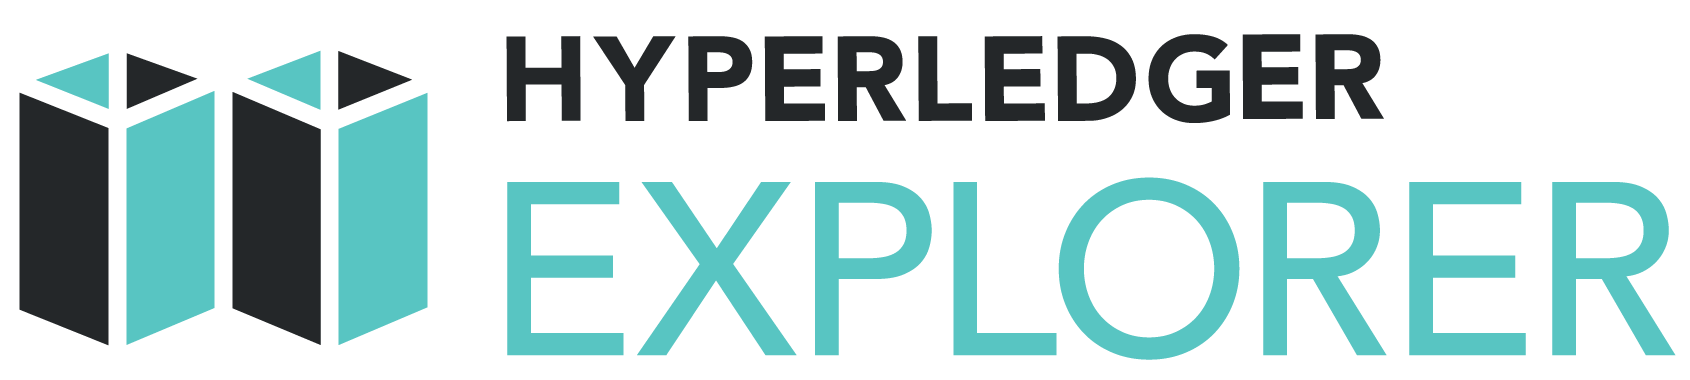 _images/Hyperledger_Explorer_Logo_Color.png